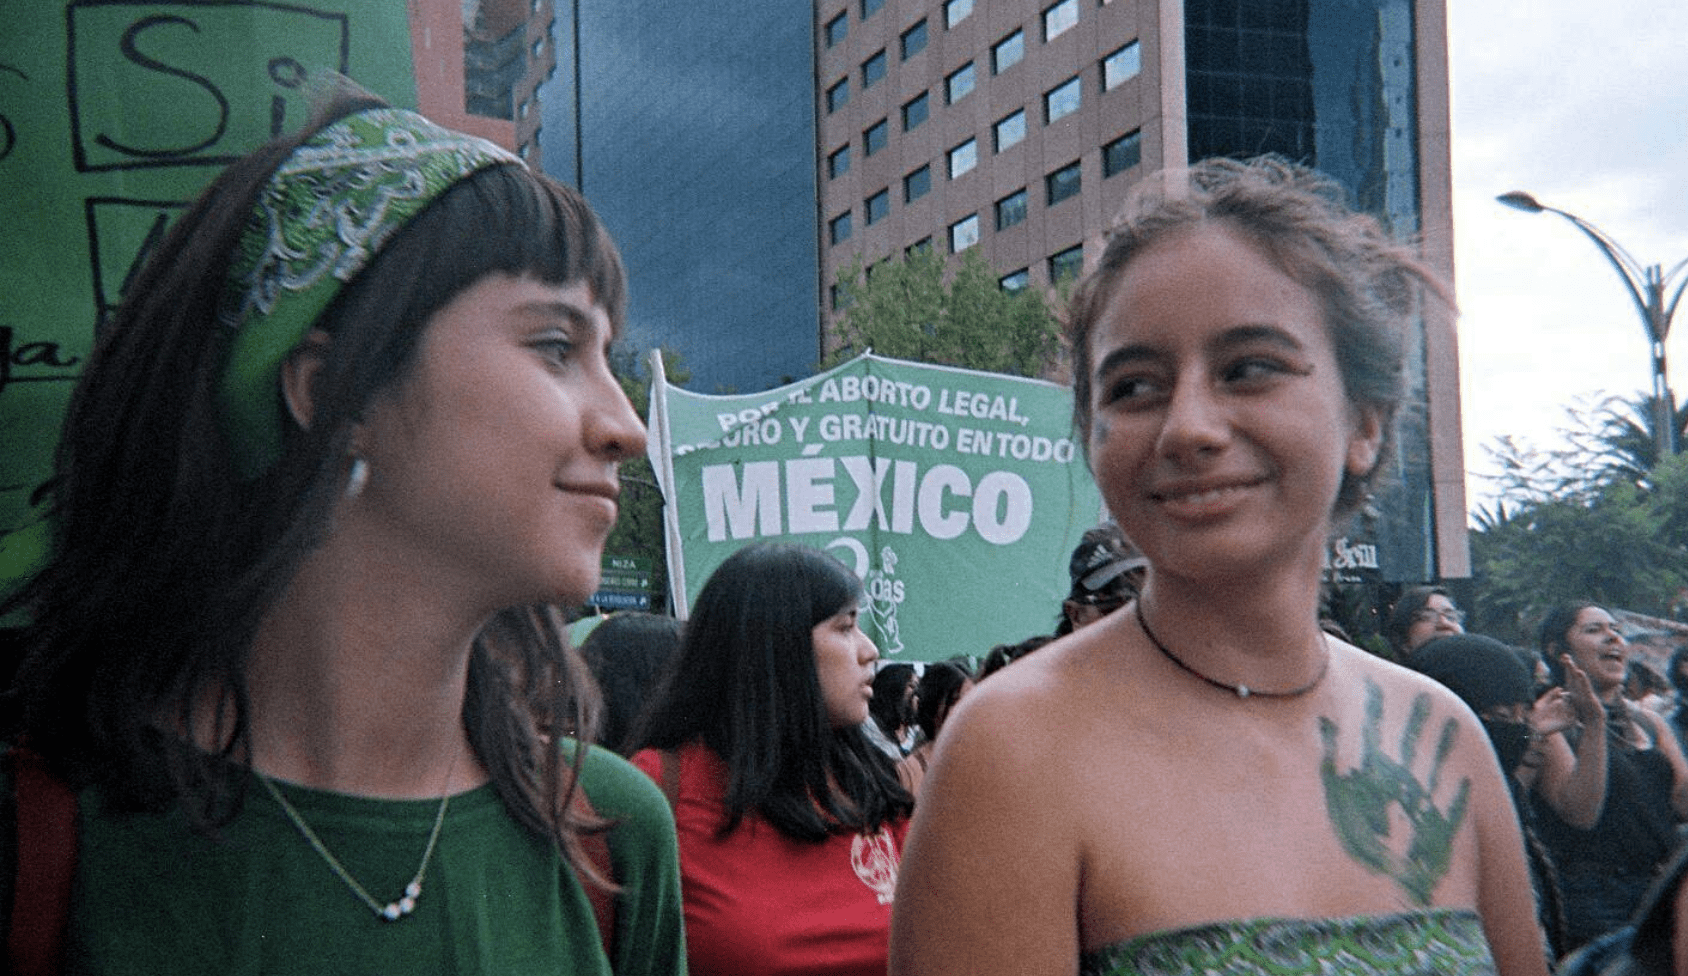 Decidí responsabilizarme por el mundo y los que vivimos en él: Monserrat abortó en México